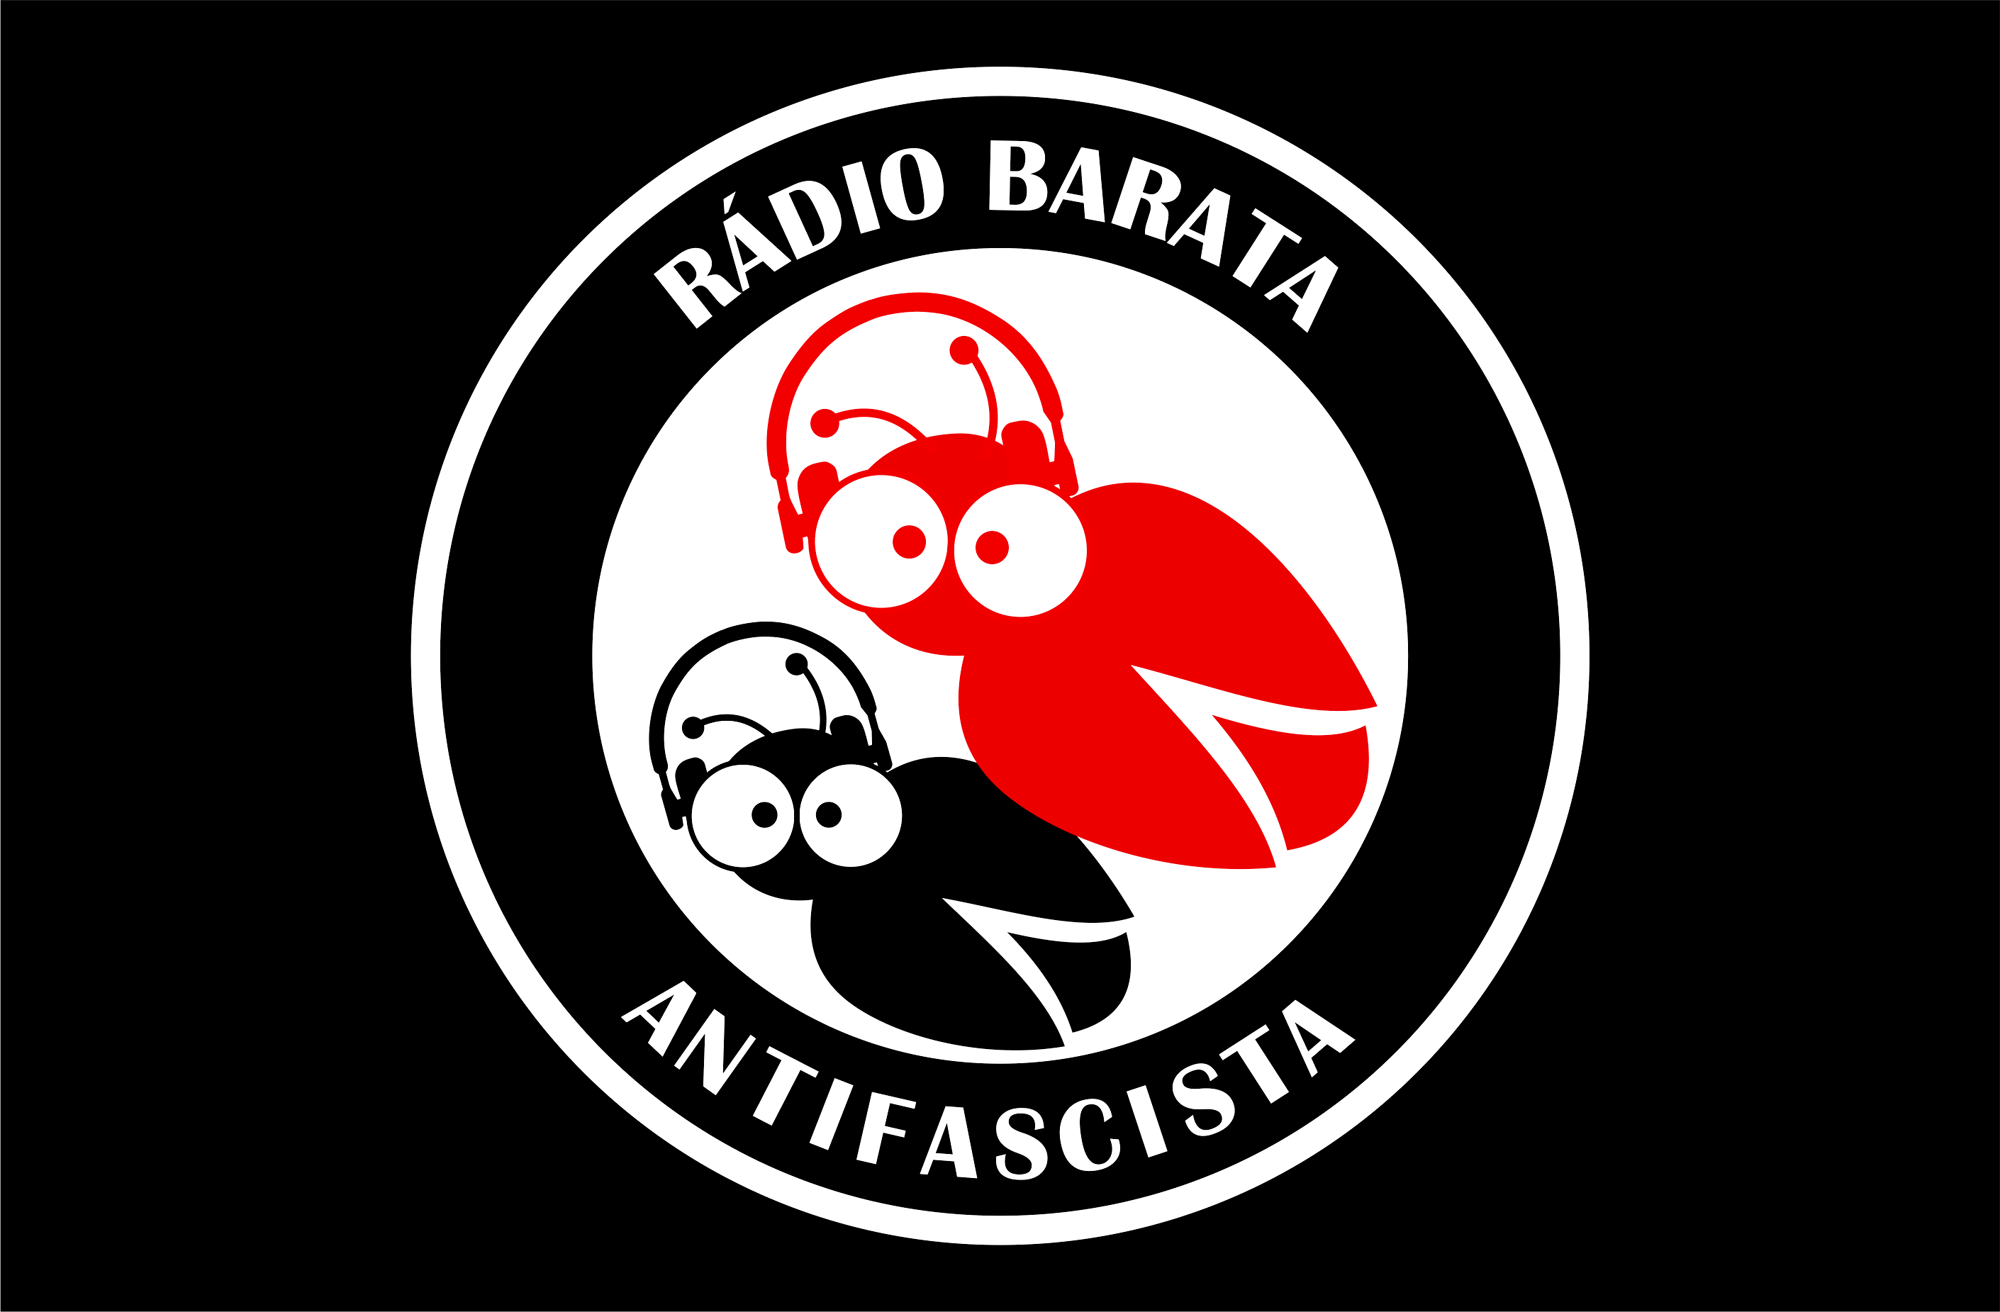 Radio Barata Antifascista